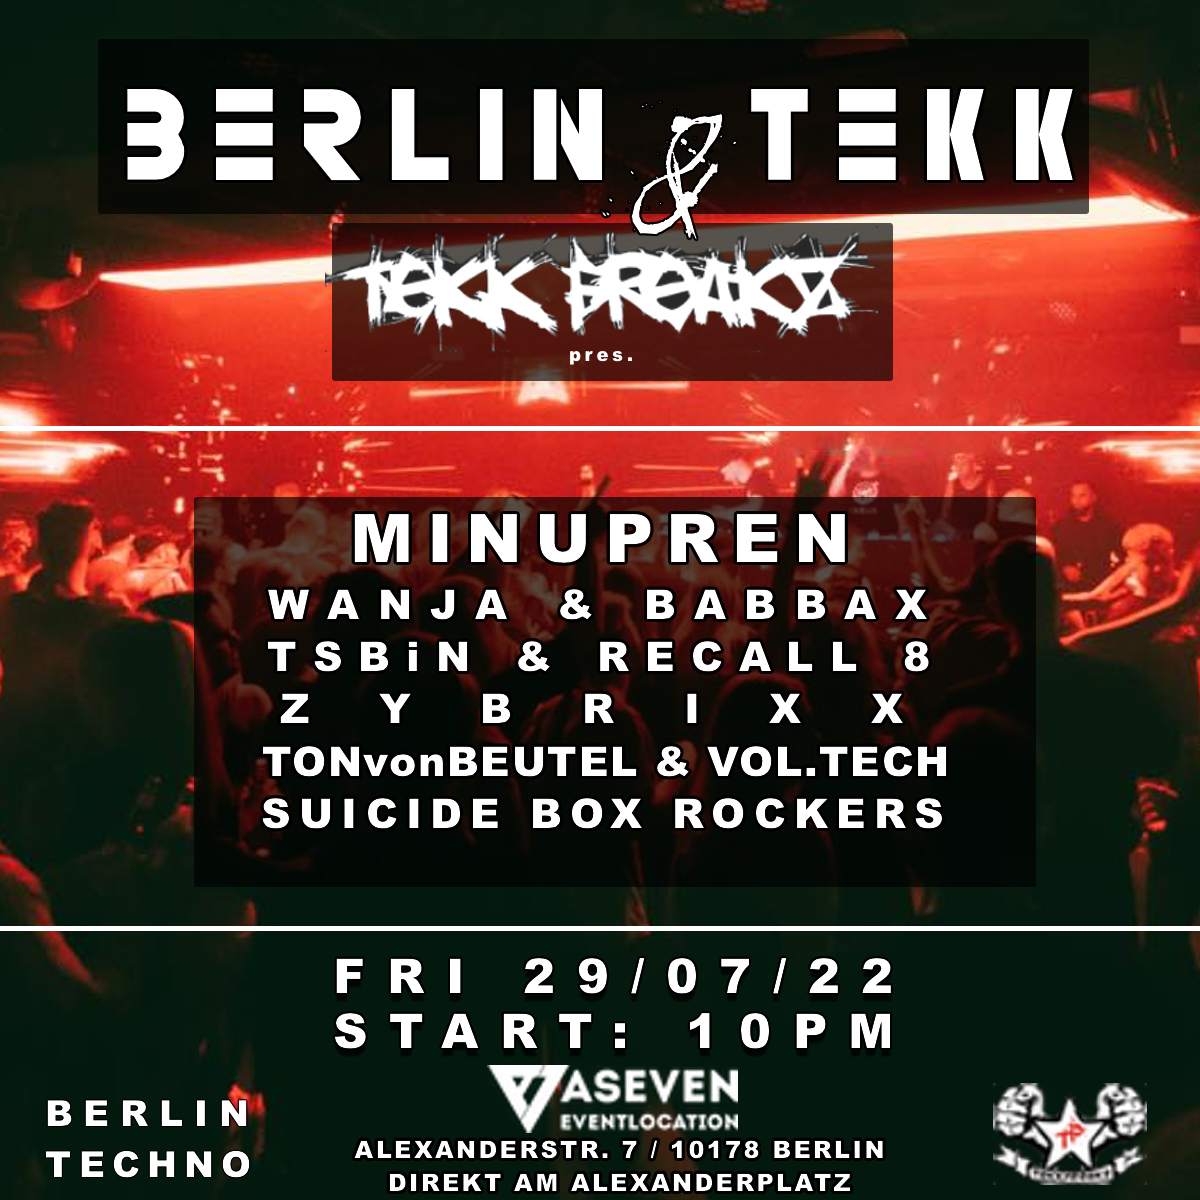 BERLIN TEKK & TEKK FREAKZ: WE LOVE HARDTEKK - フライヤー裏